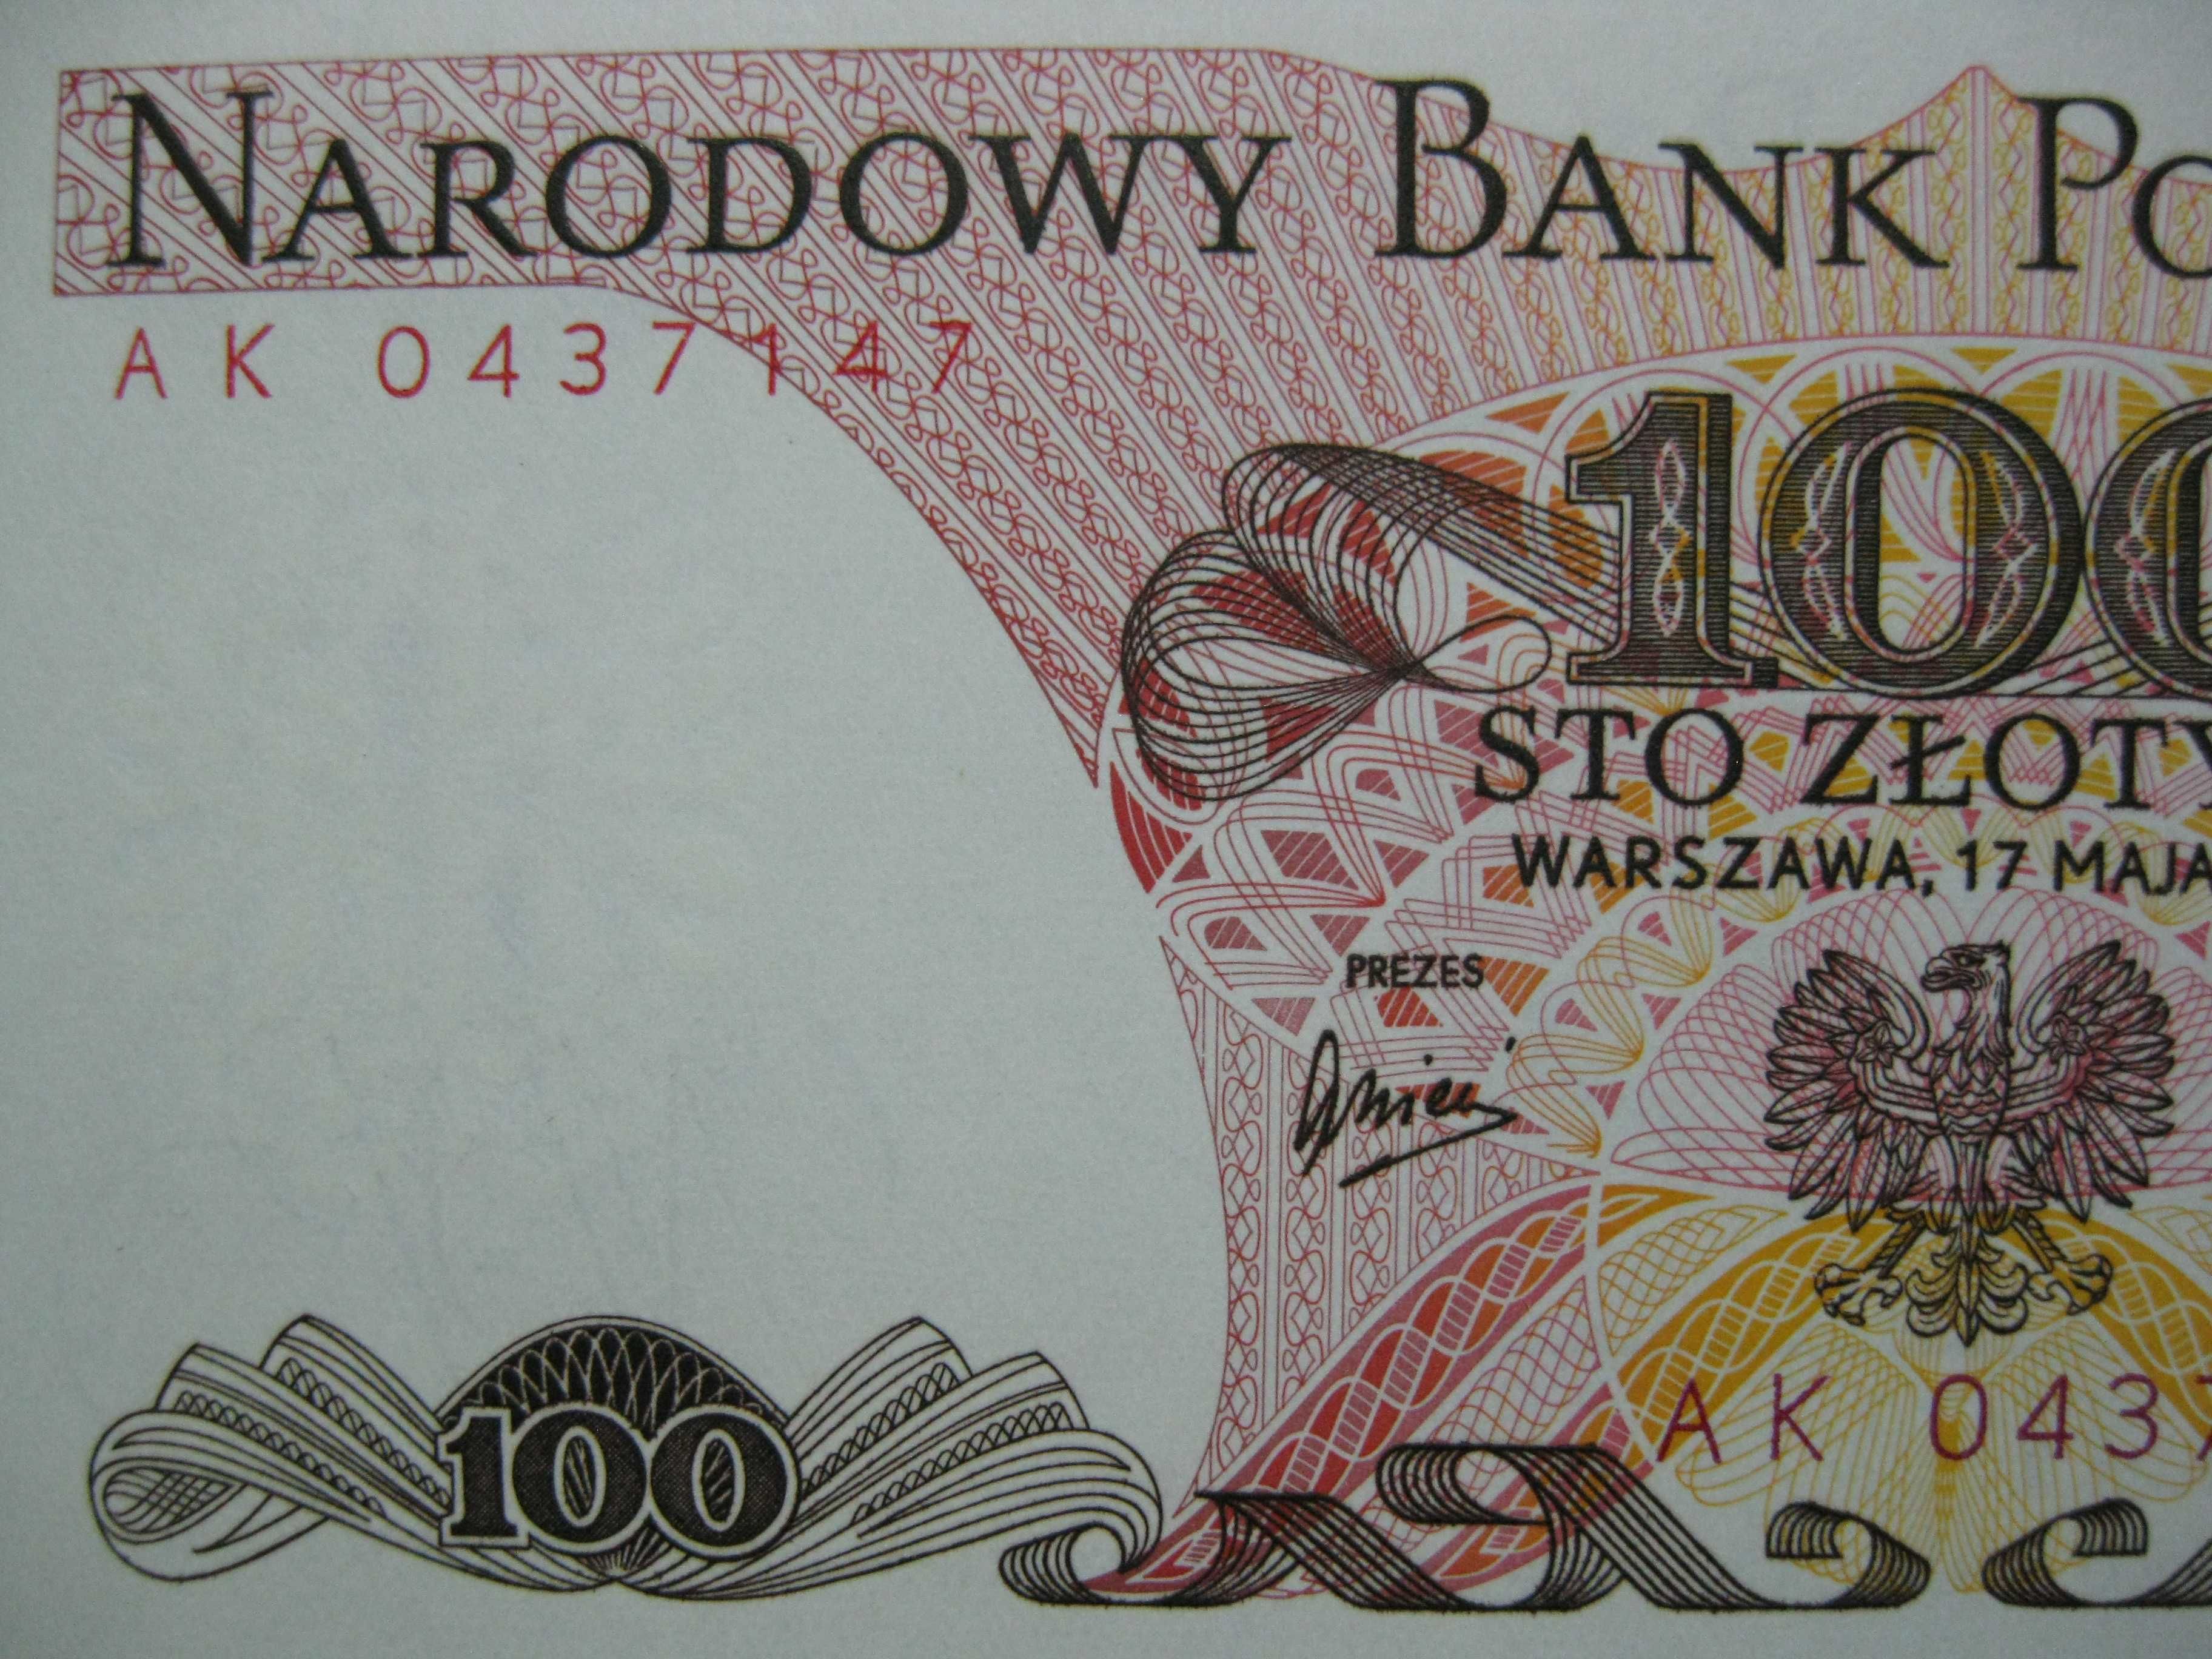 Banknot PRL 100 złotych sto zł. 1976 rok seria AK Ludwik Waryński UNC